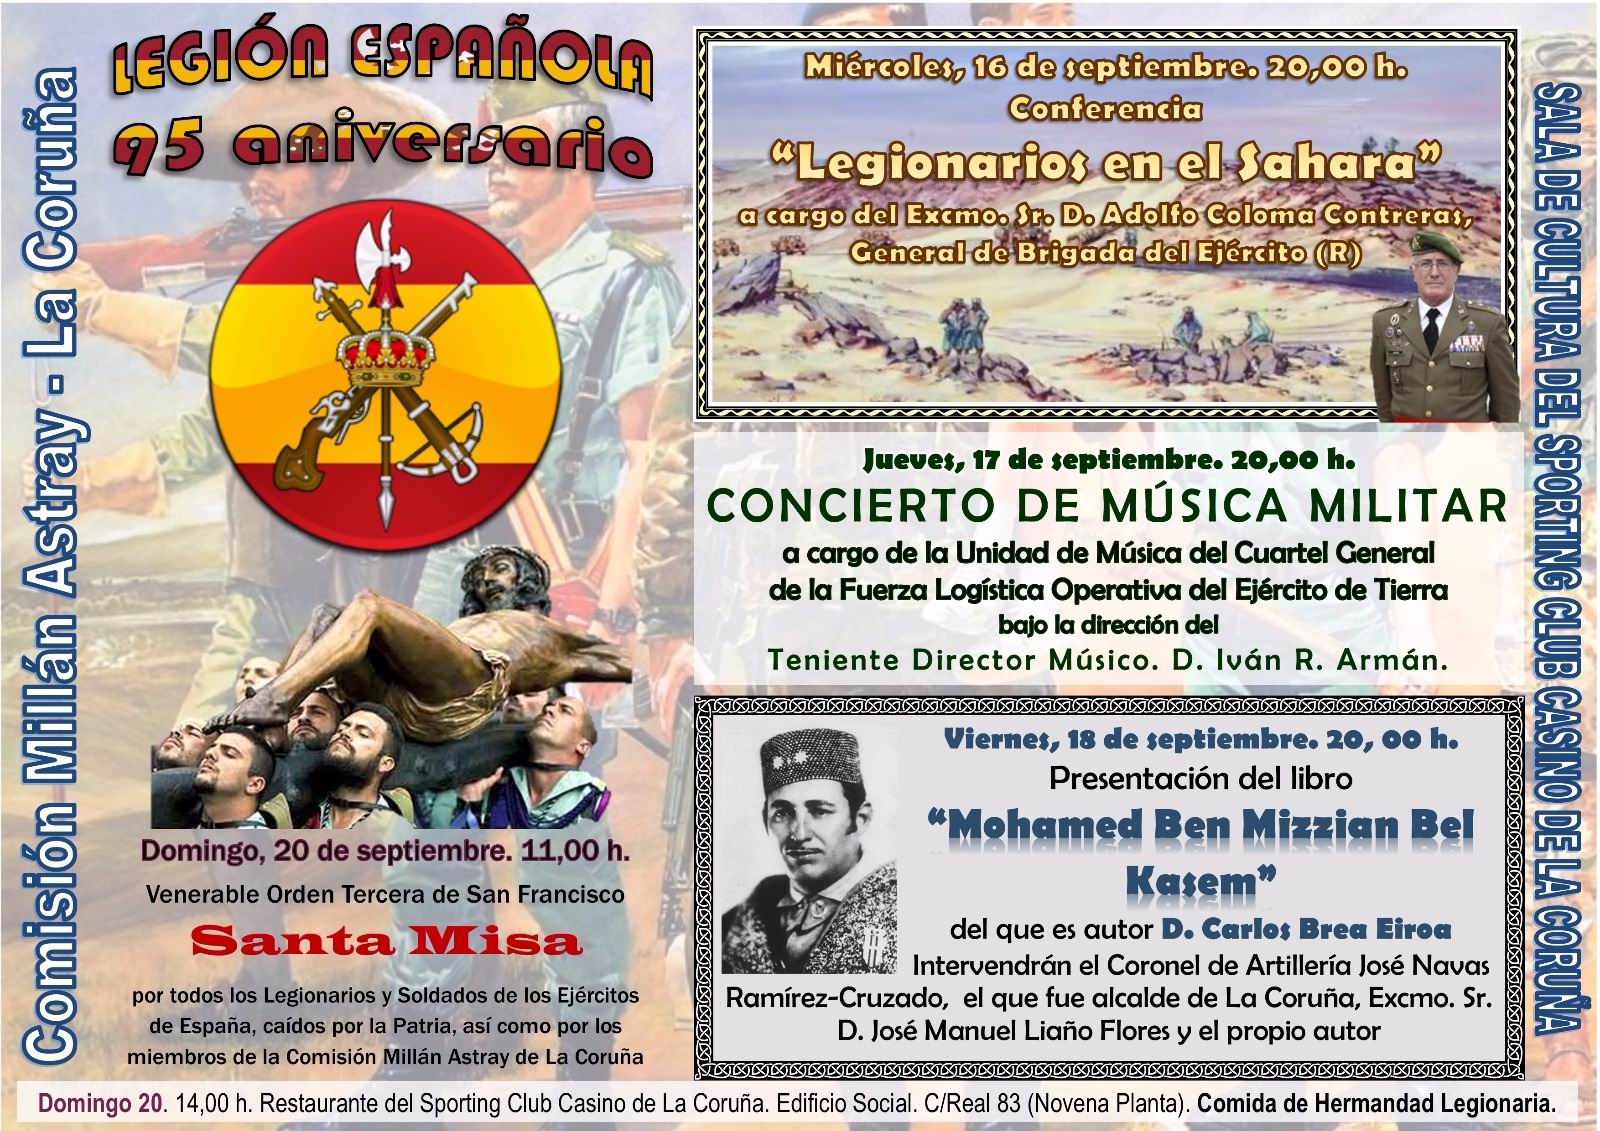 Ex legionarios coruñeses y simpatizantes celebran el 95 Aniversario de la Legión Española